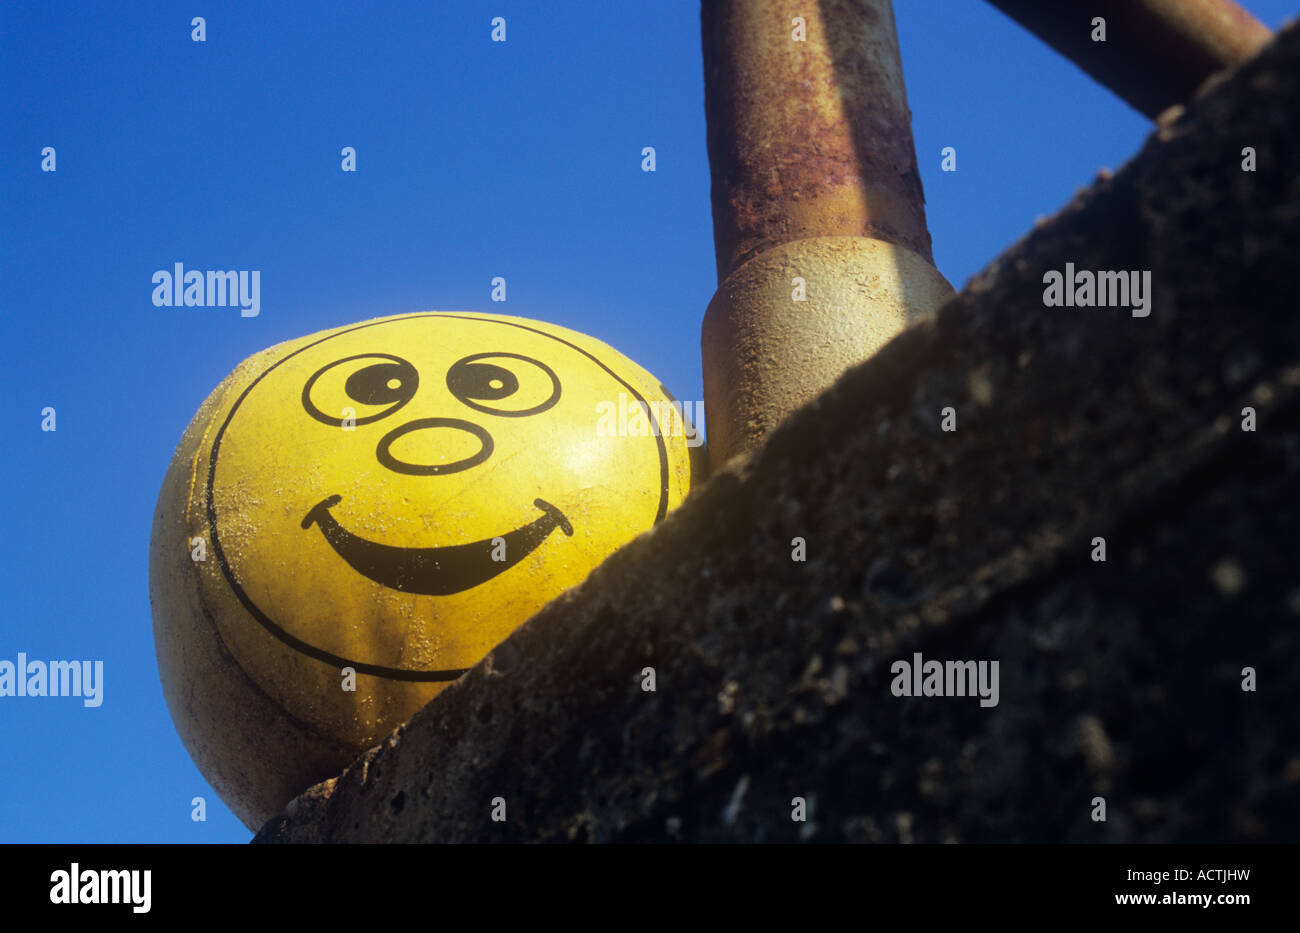 Vinyle souple et rembourré avec balle jaune smiley effronté et grains de sable par rusty forgé sur mur de béton sous ciel bleu clair Banque D'Images